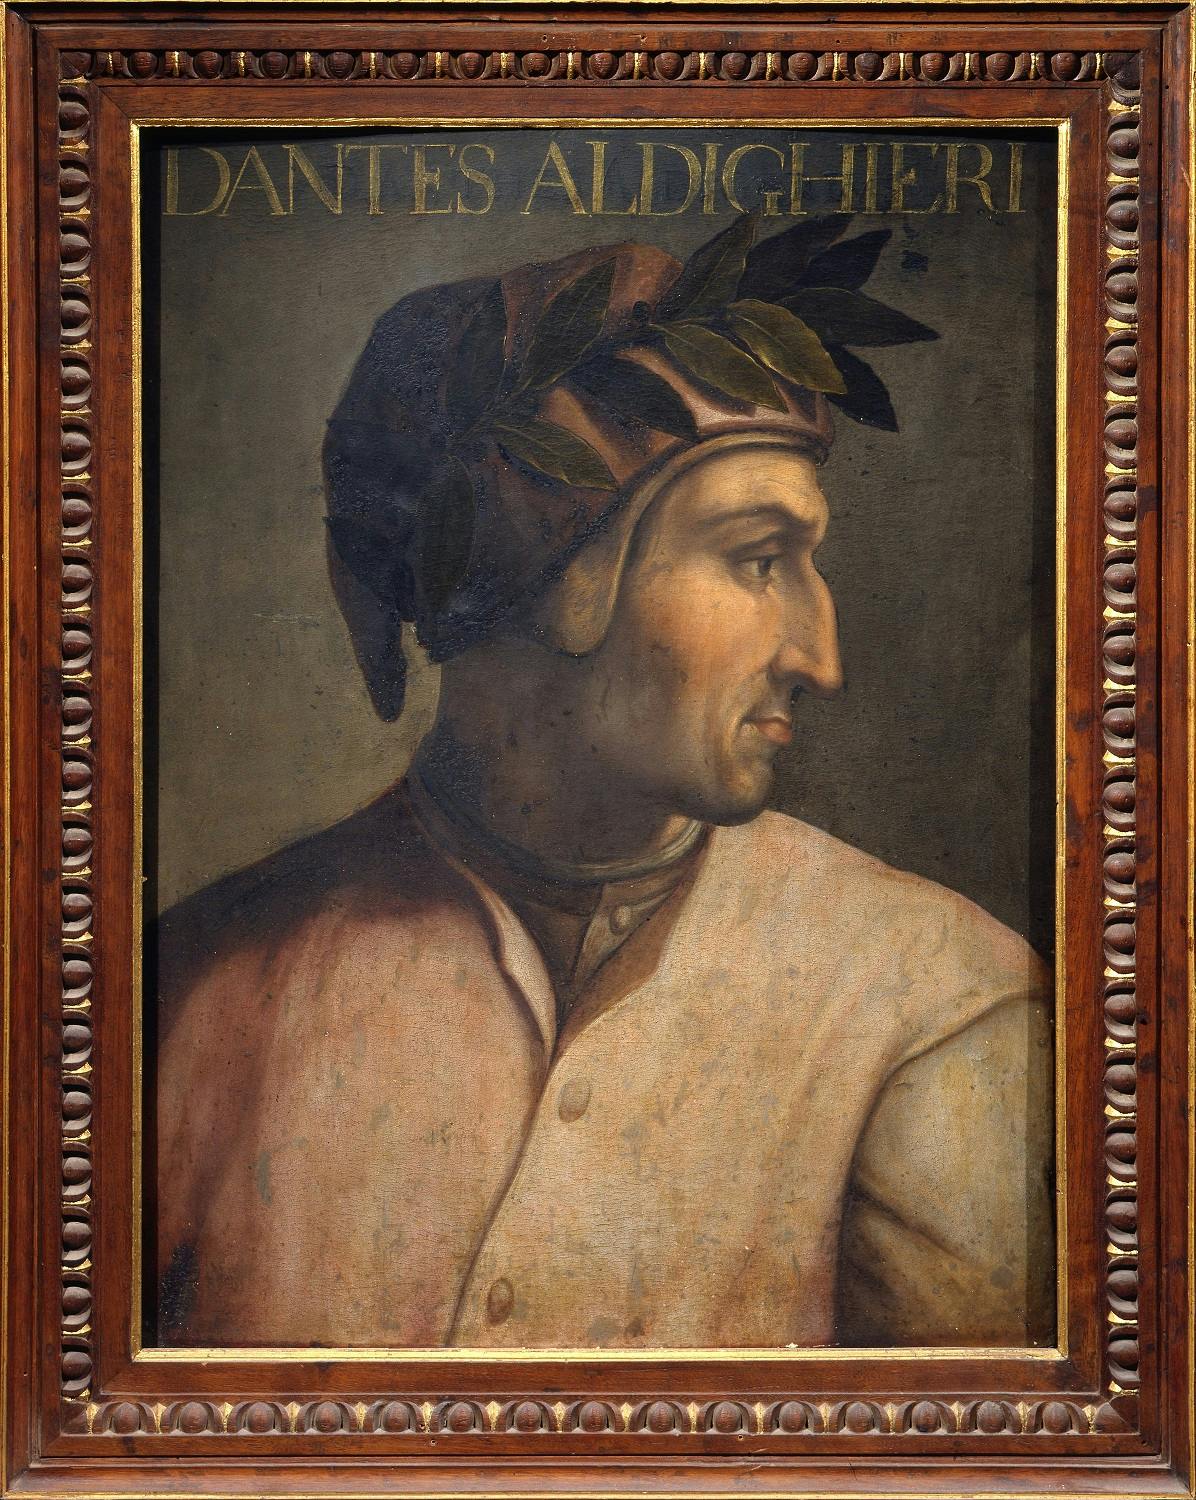 Dante, la visione dell'arte